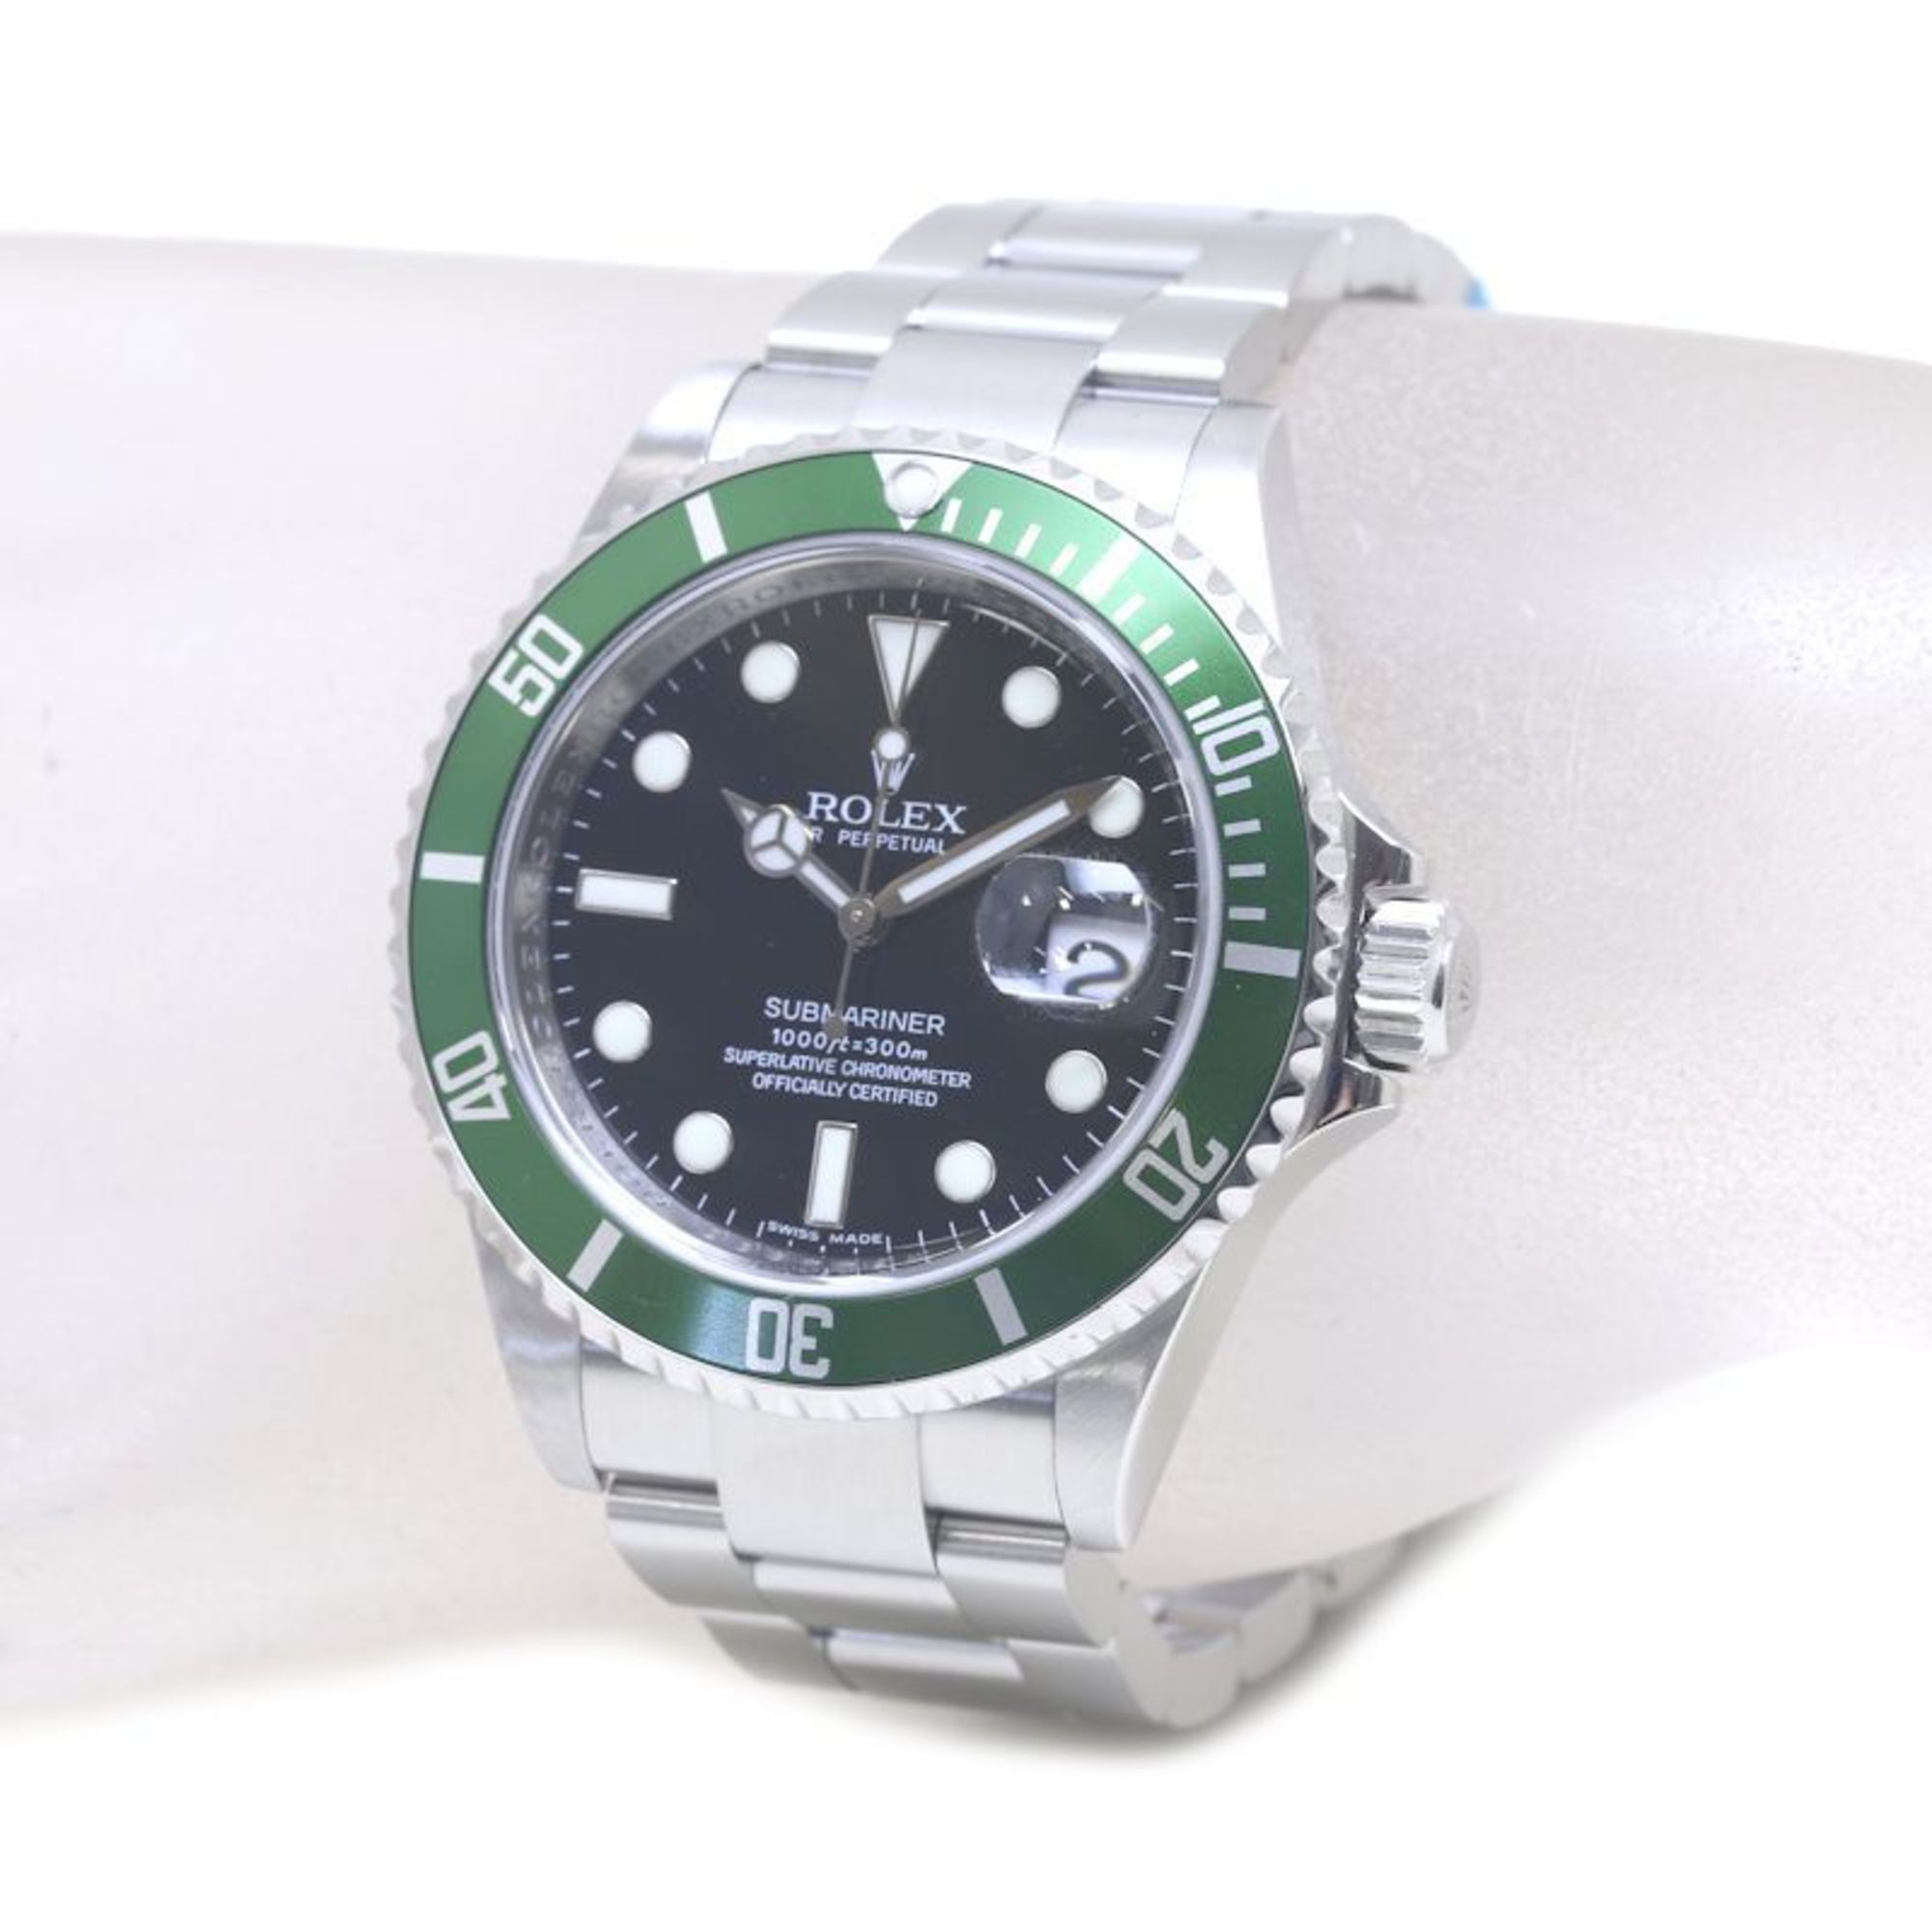 ROLEX Rolex Submariner Date 16610LV Stainless Steel Men's Watch 39465